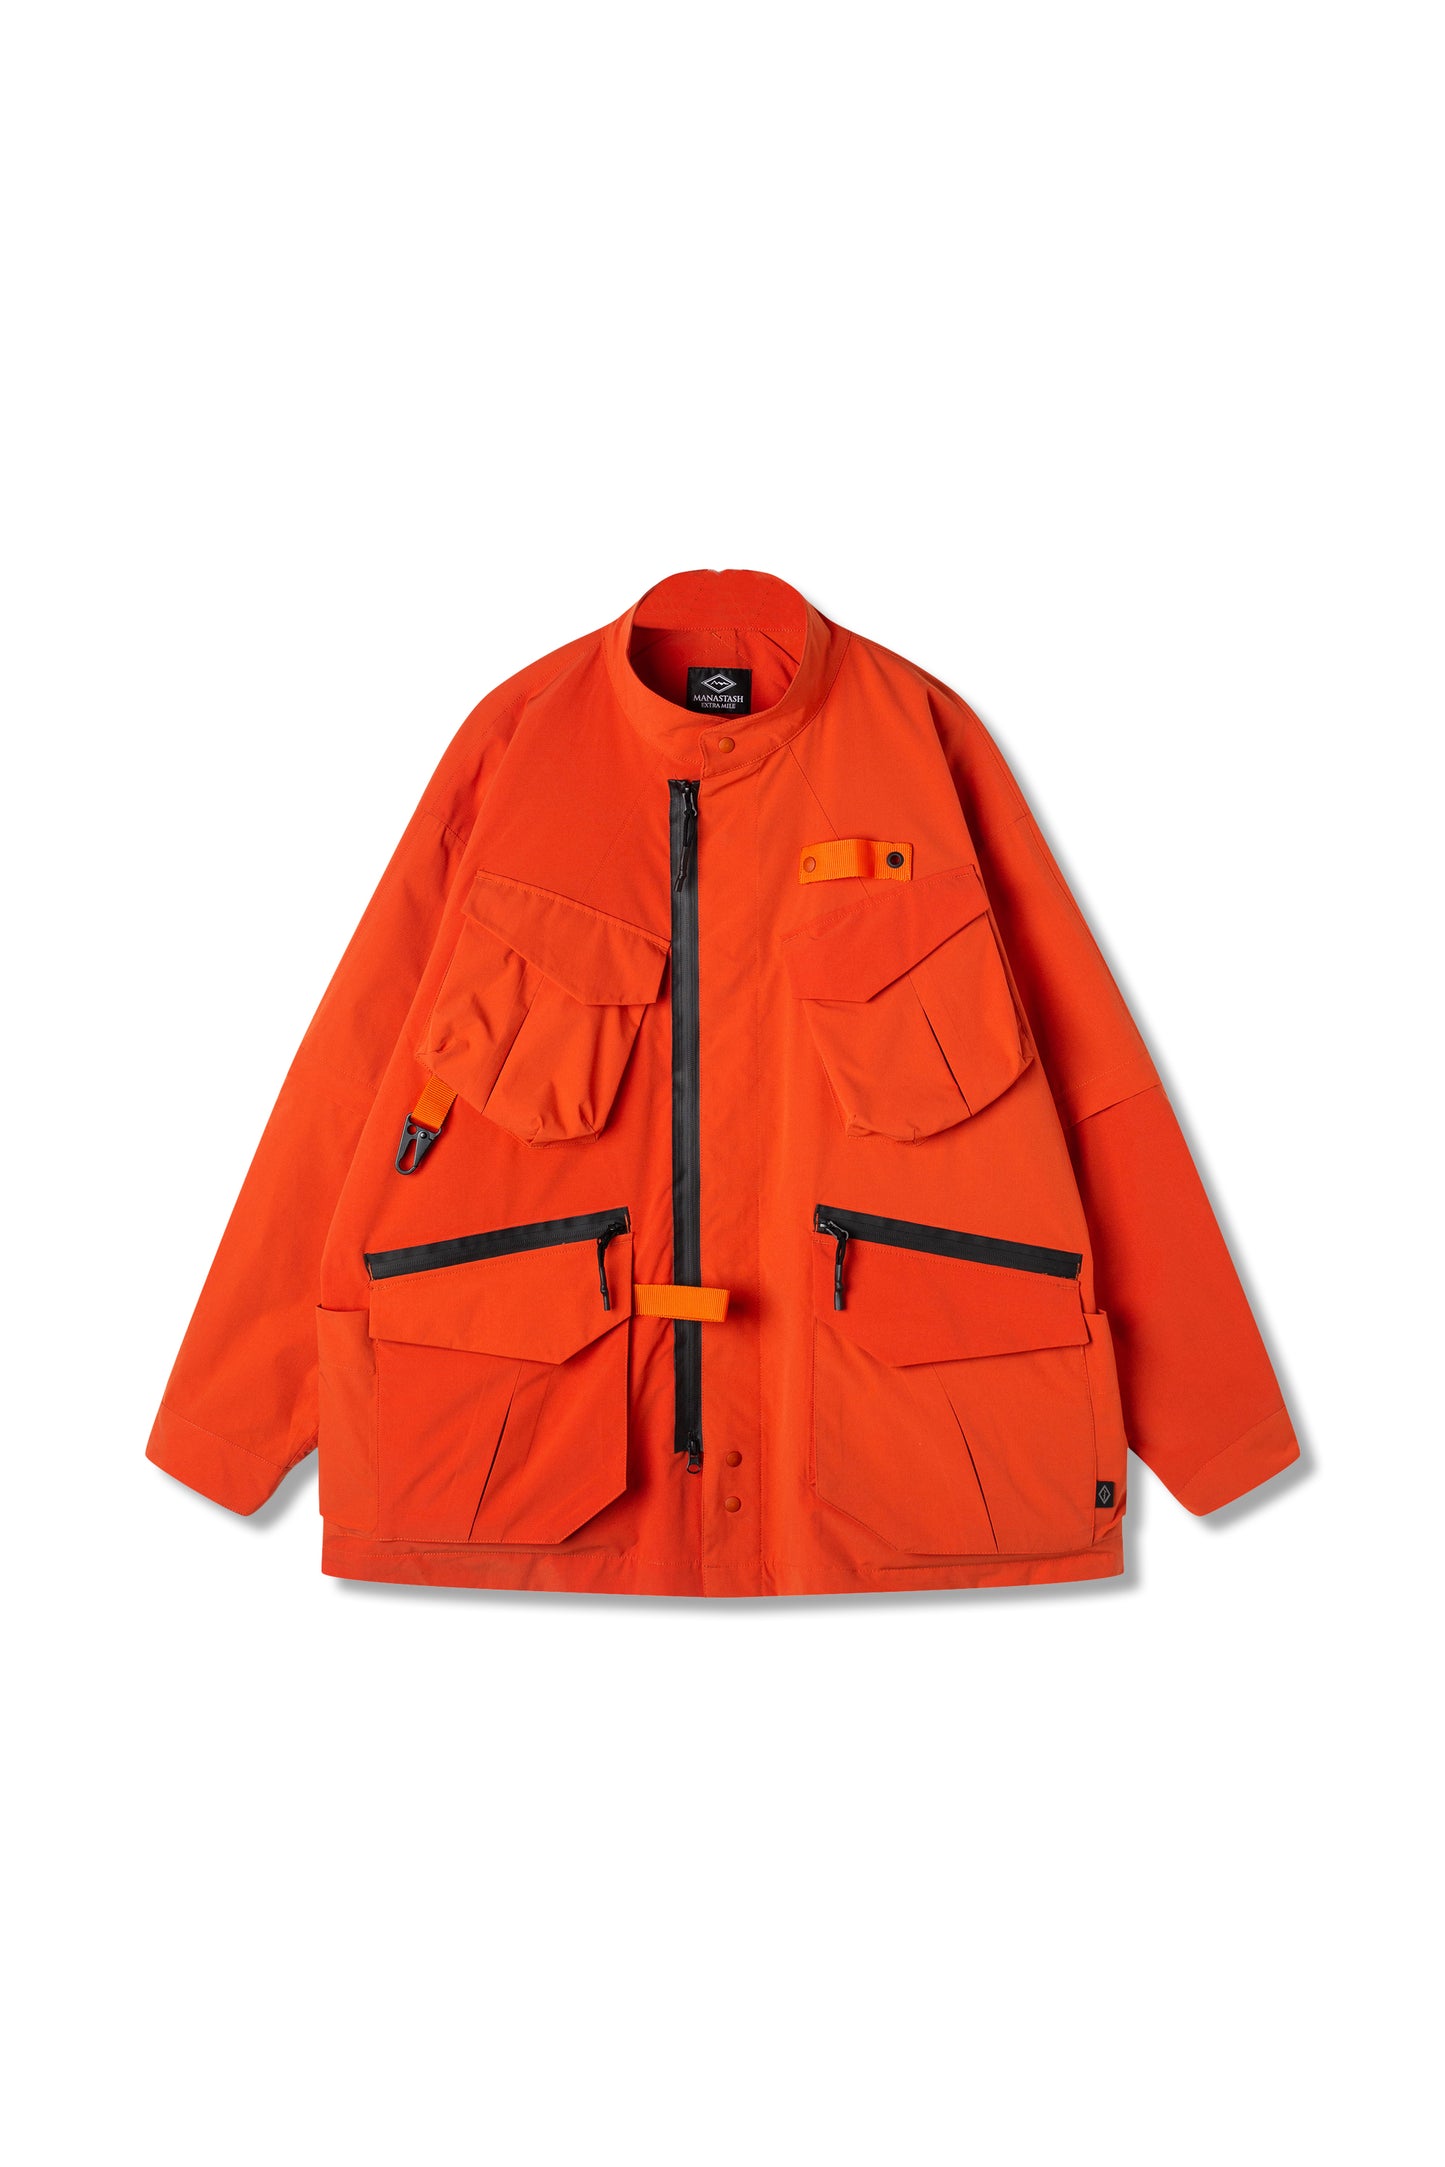 Extra Mile Infinity Jacket (Orange)